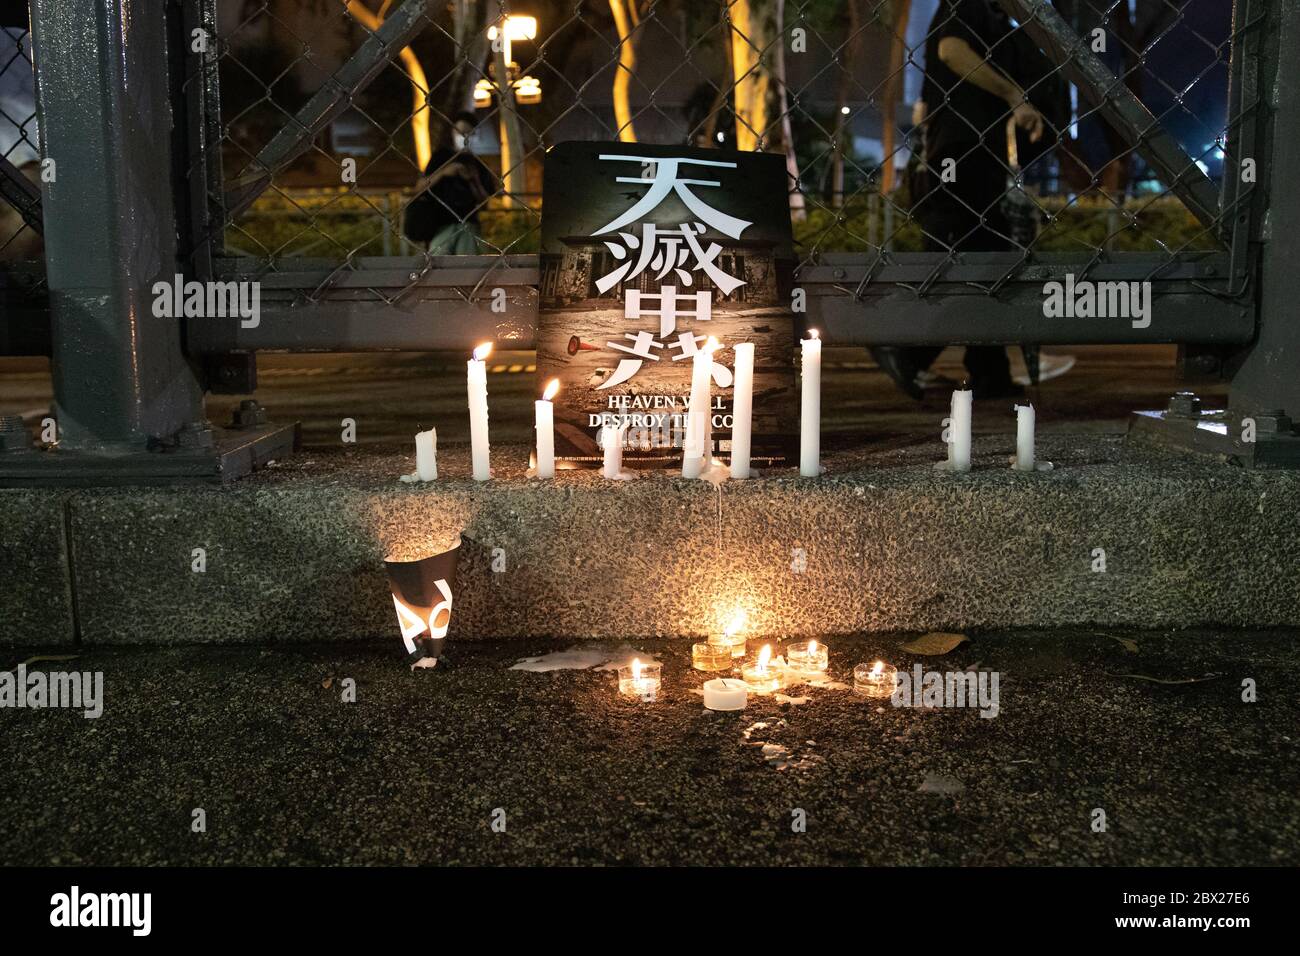 Causeway Bay, Hong Kong. 04, juin 2020. Des bougies commémoratives sont allumées pour commémorer les manifestations étudiantes en Chine sur la place Tiananmen, bien qu'elles soient interdites en Chine et à Hong Kong. © Danny Tsai / Alamy Live News Banque D'Images